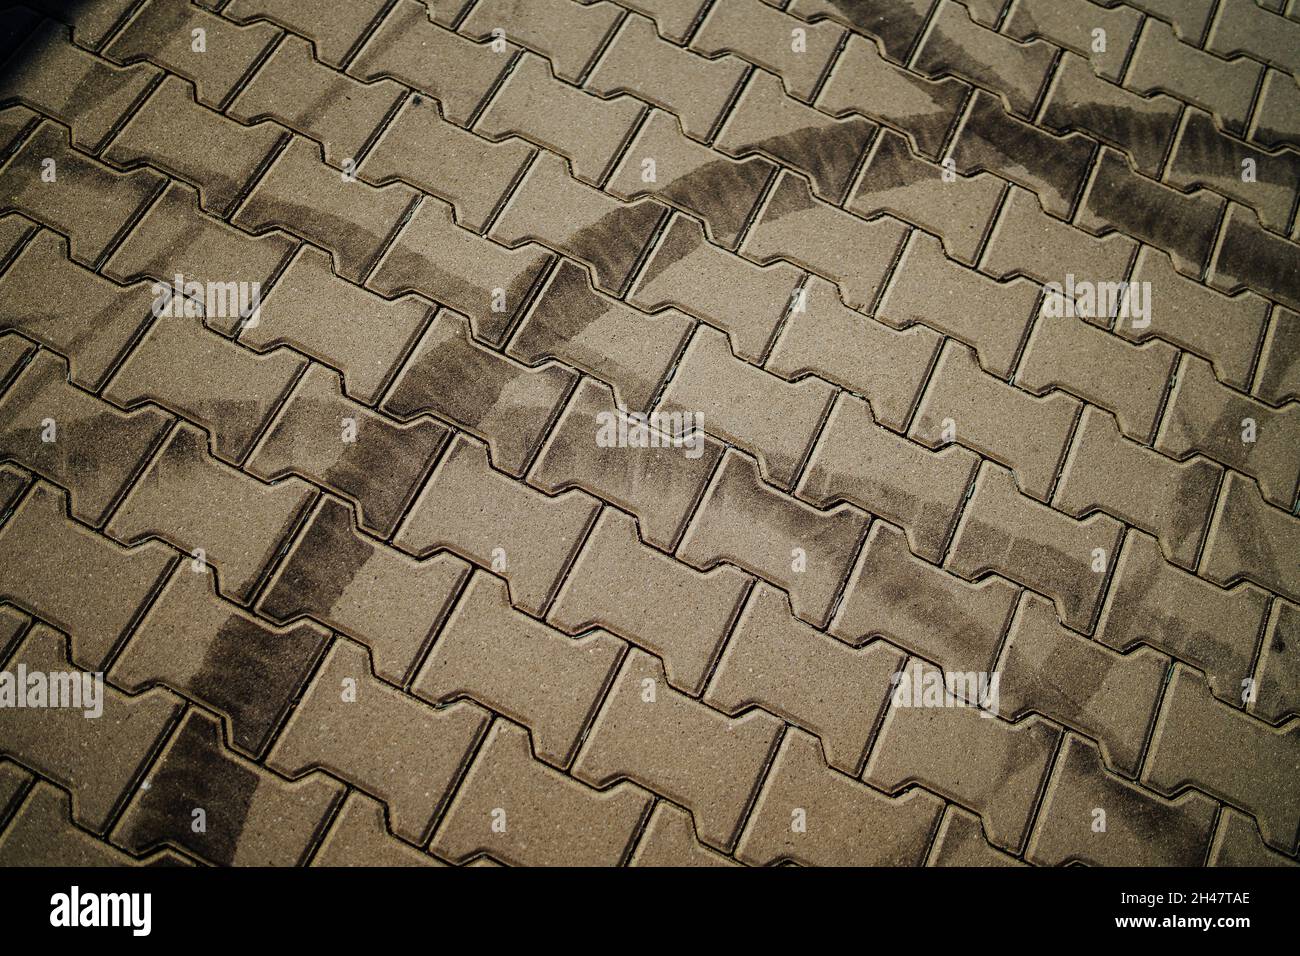 Draufsicht auf kreisförmige Reifenspuren auf dem Bürgersteig  Stockfotografie - Alamy